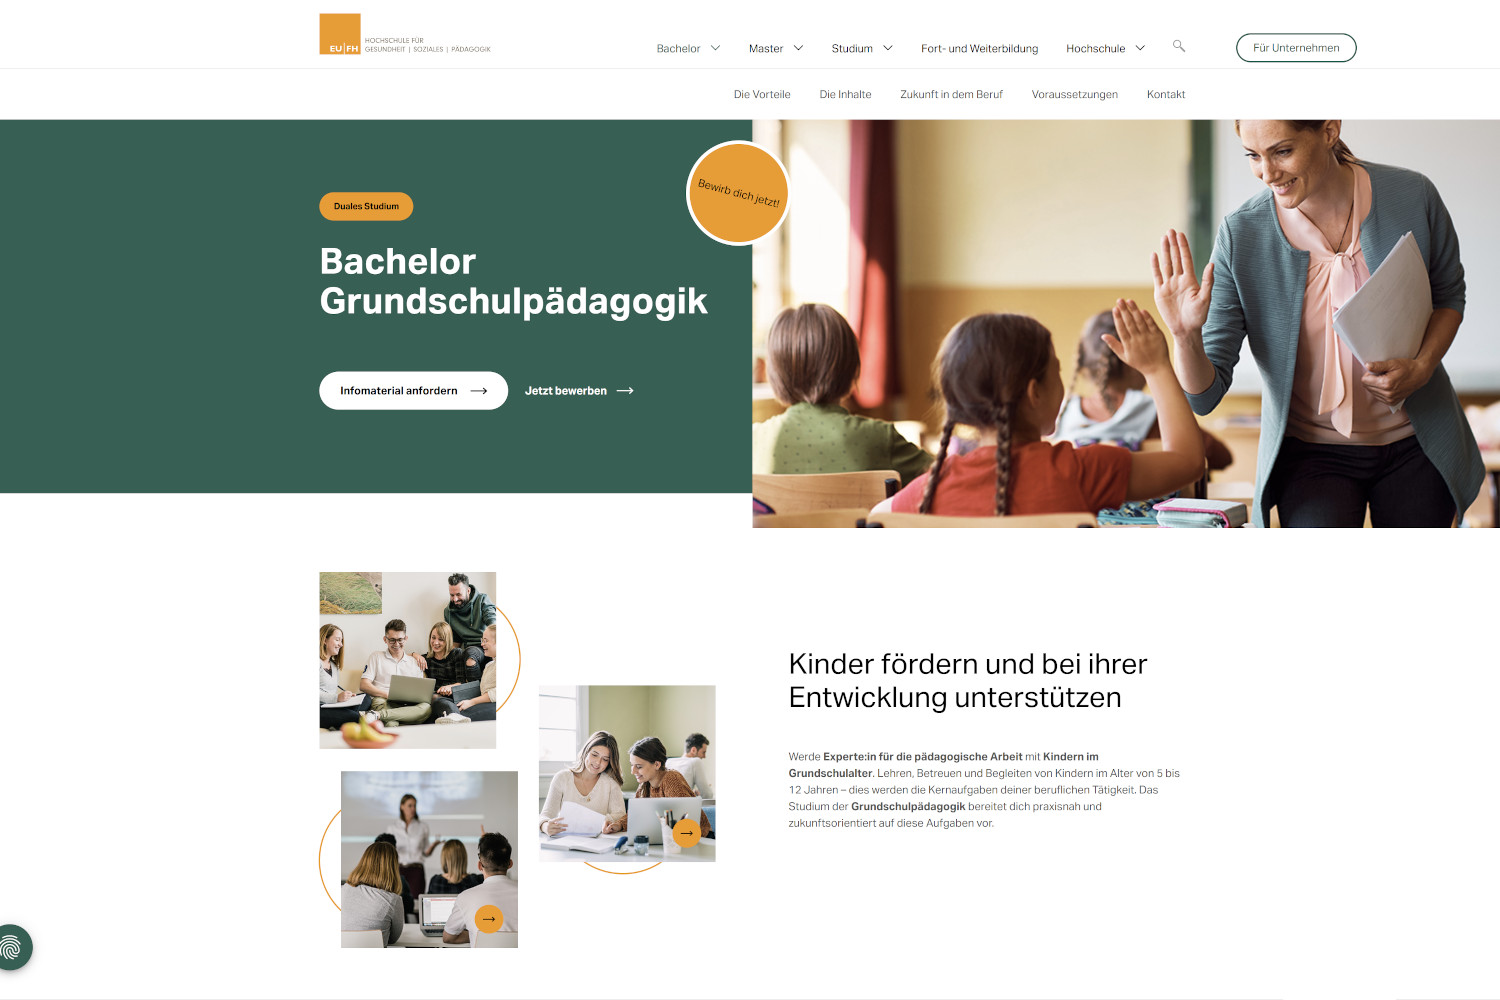 Das Bild zeigt die Homepage des Studiengangs Bachelor Grundschulpädagogik der EUFH in Rostock und Berlin